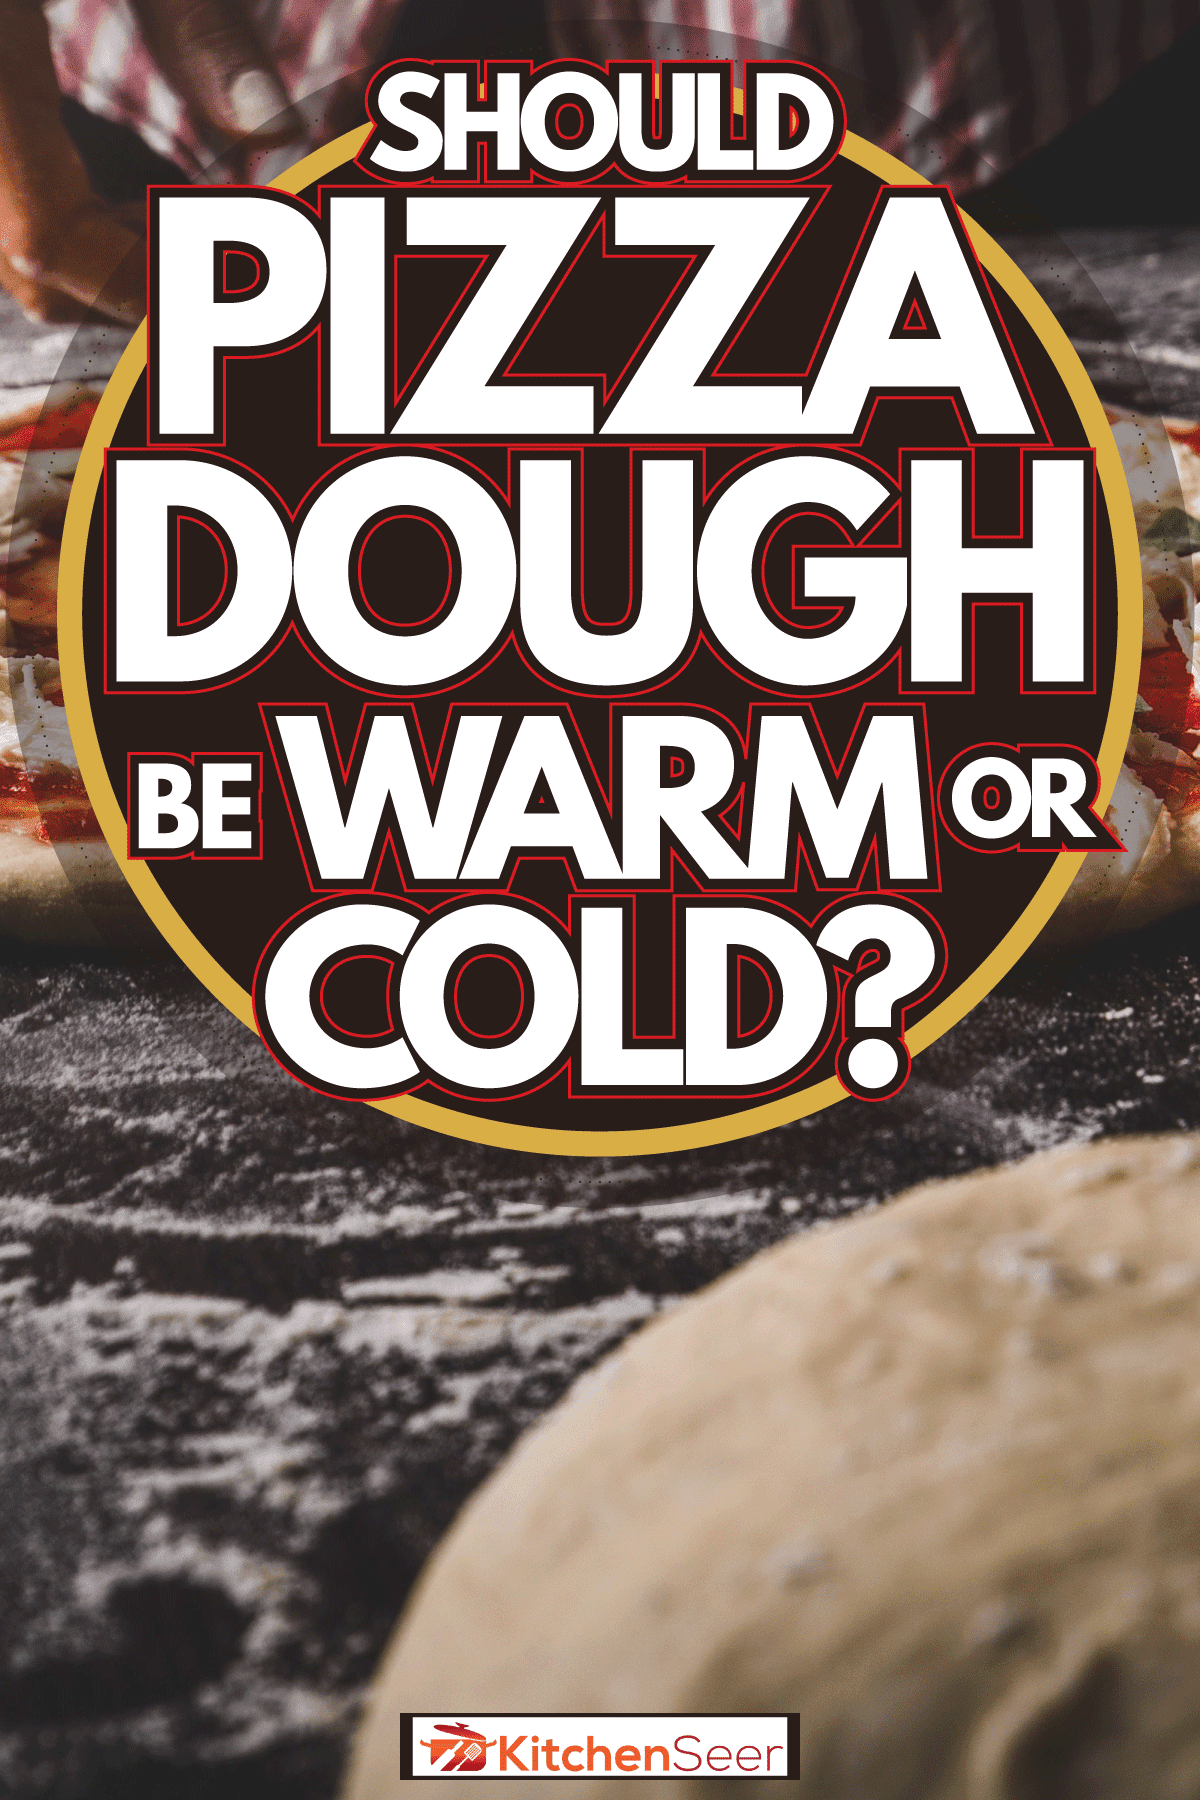 美味的披萨和面团完美结合，披萨面团应该是冷的还是热的?